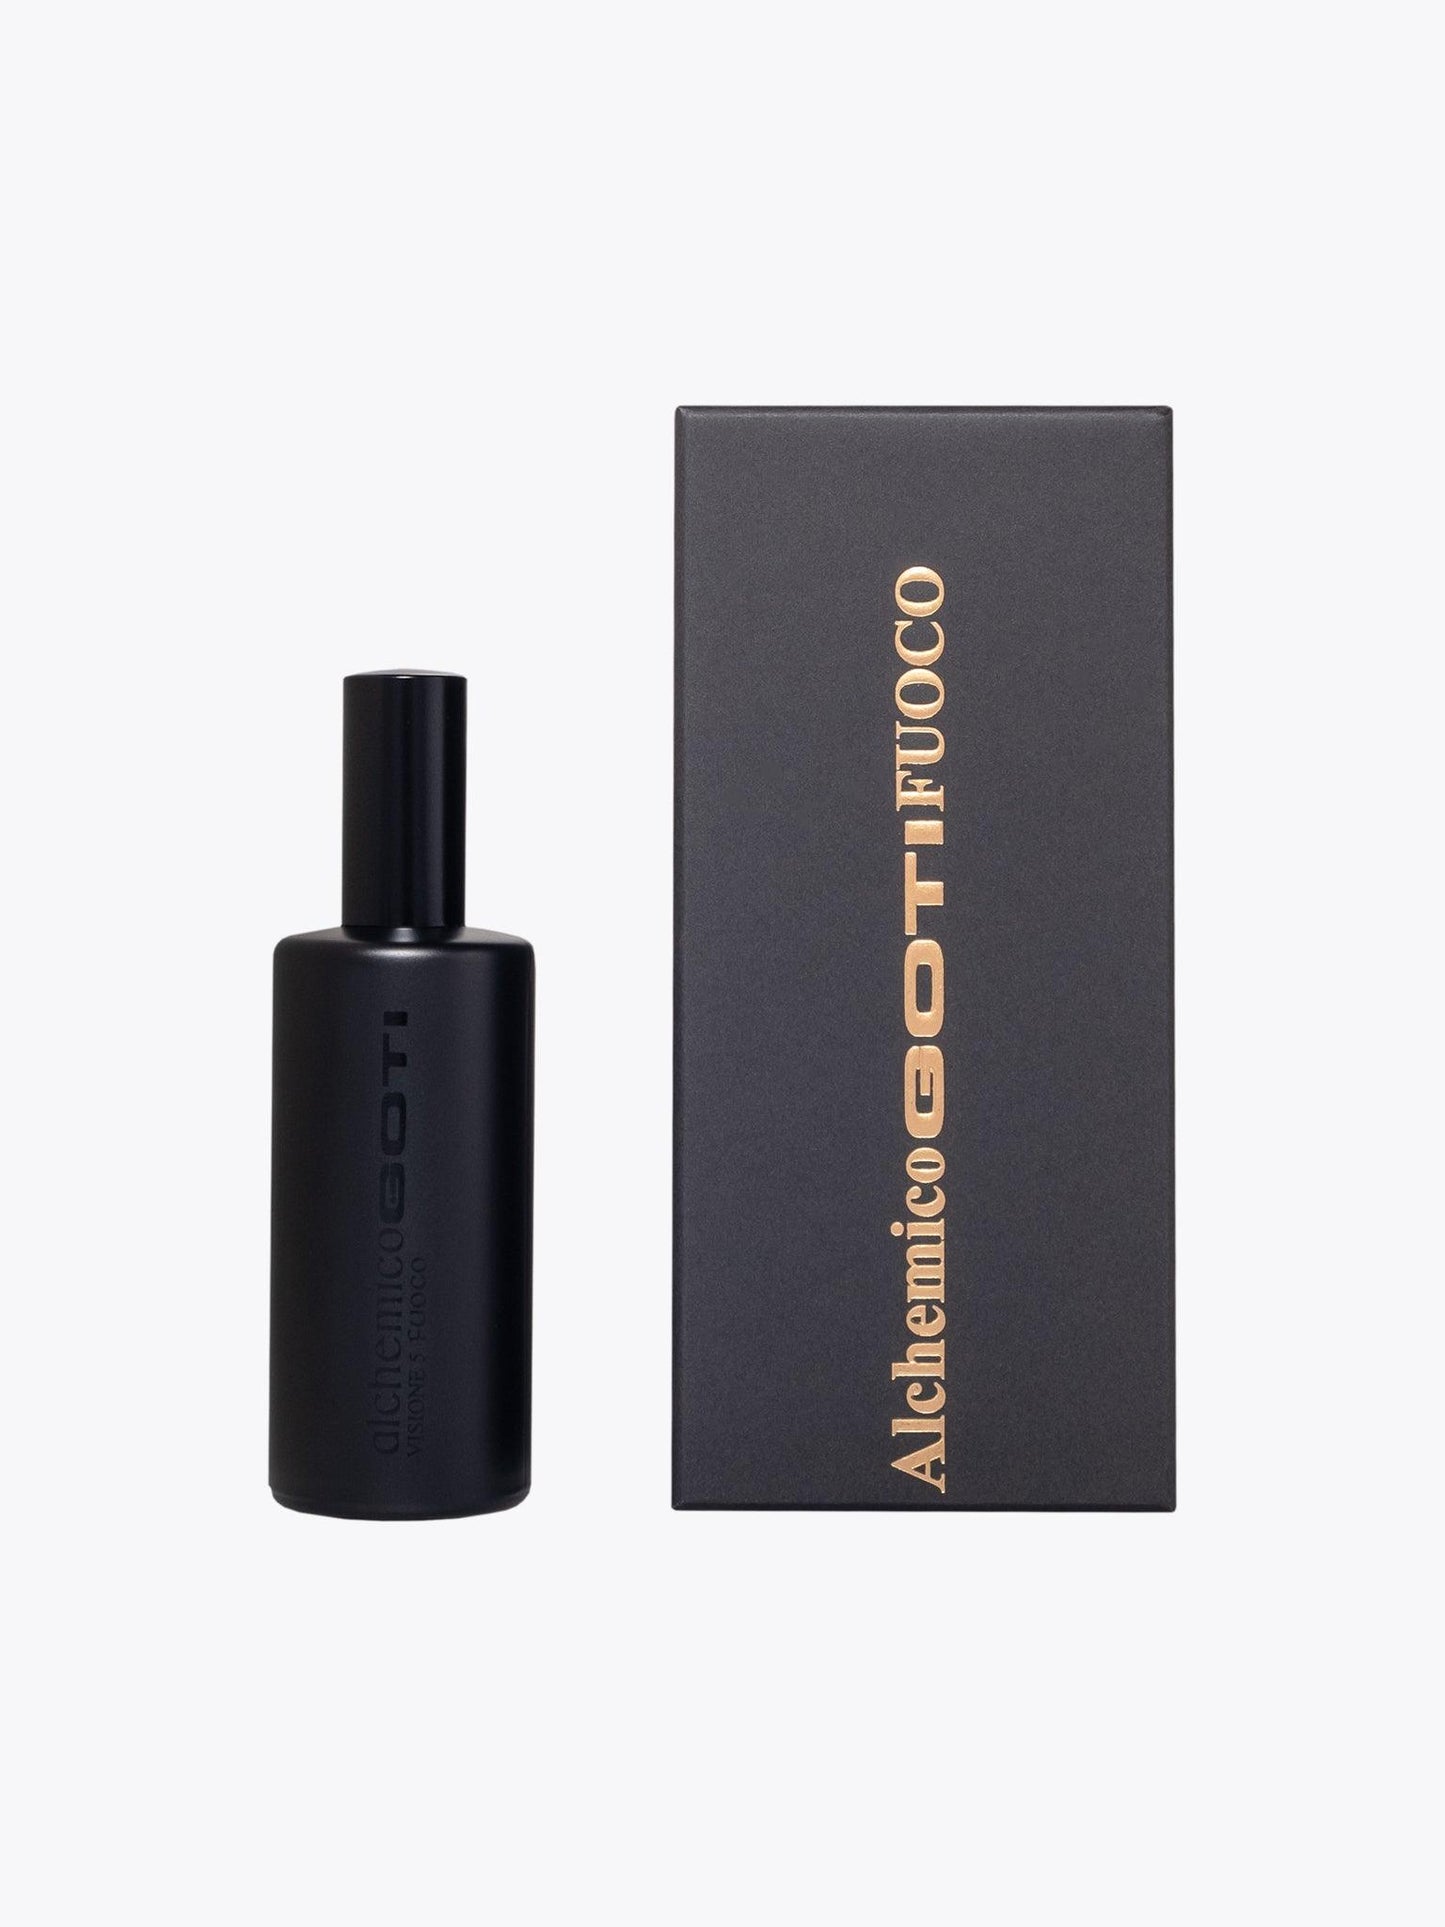 GOTI Fuoco Alchemico Visione 5 Perfume 100 ml - APODEP.com